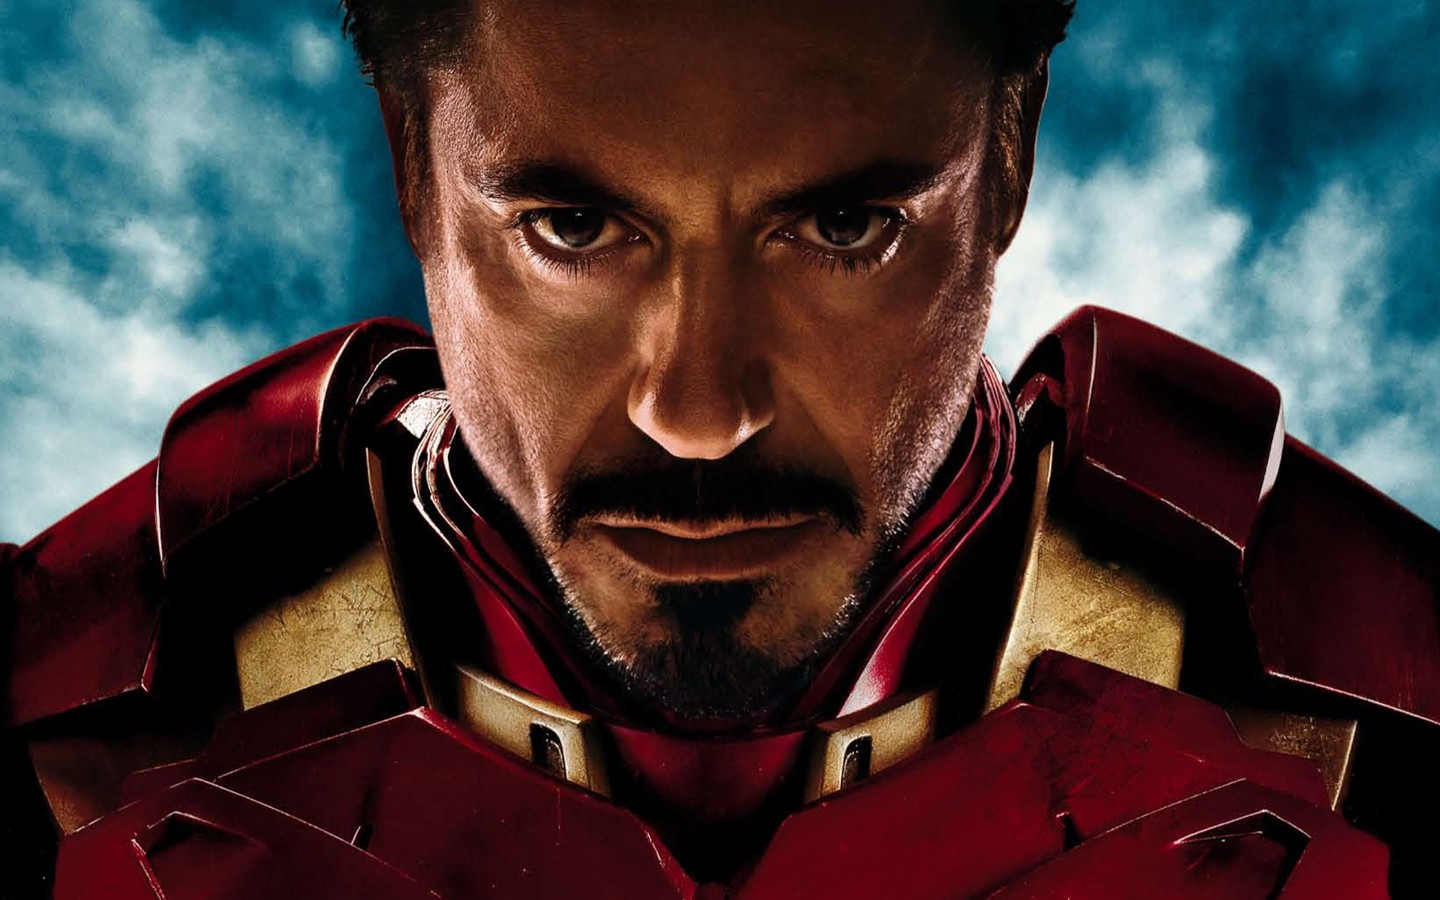 Iron Man 3 Deleted Scene: Enter the Mandarin